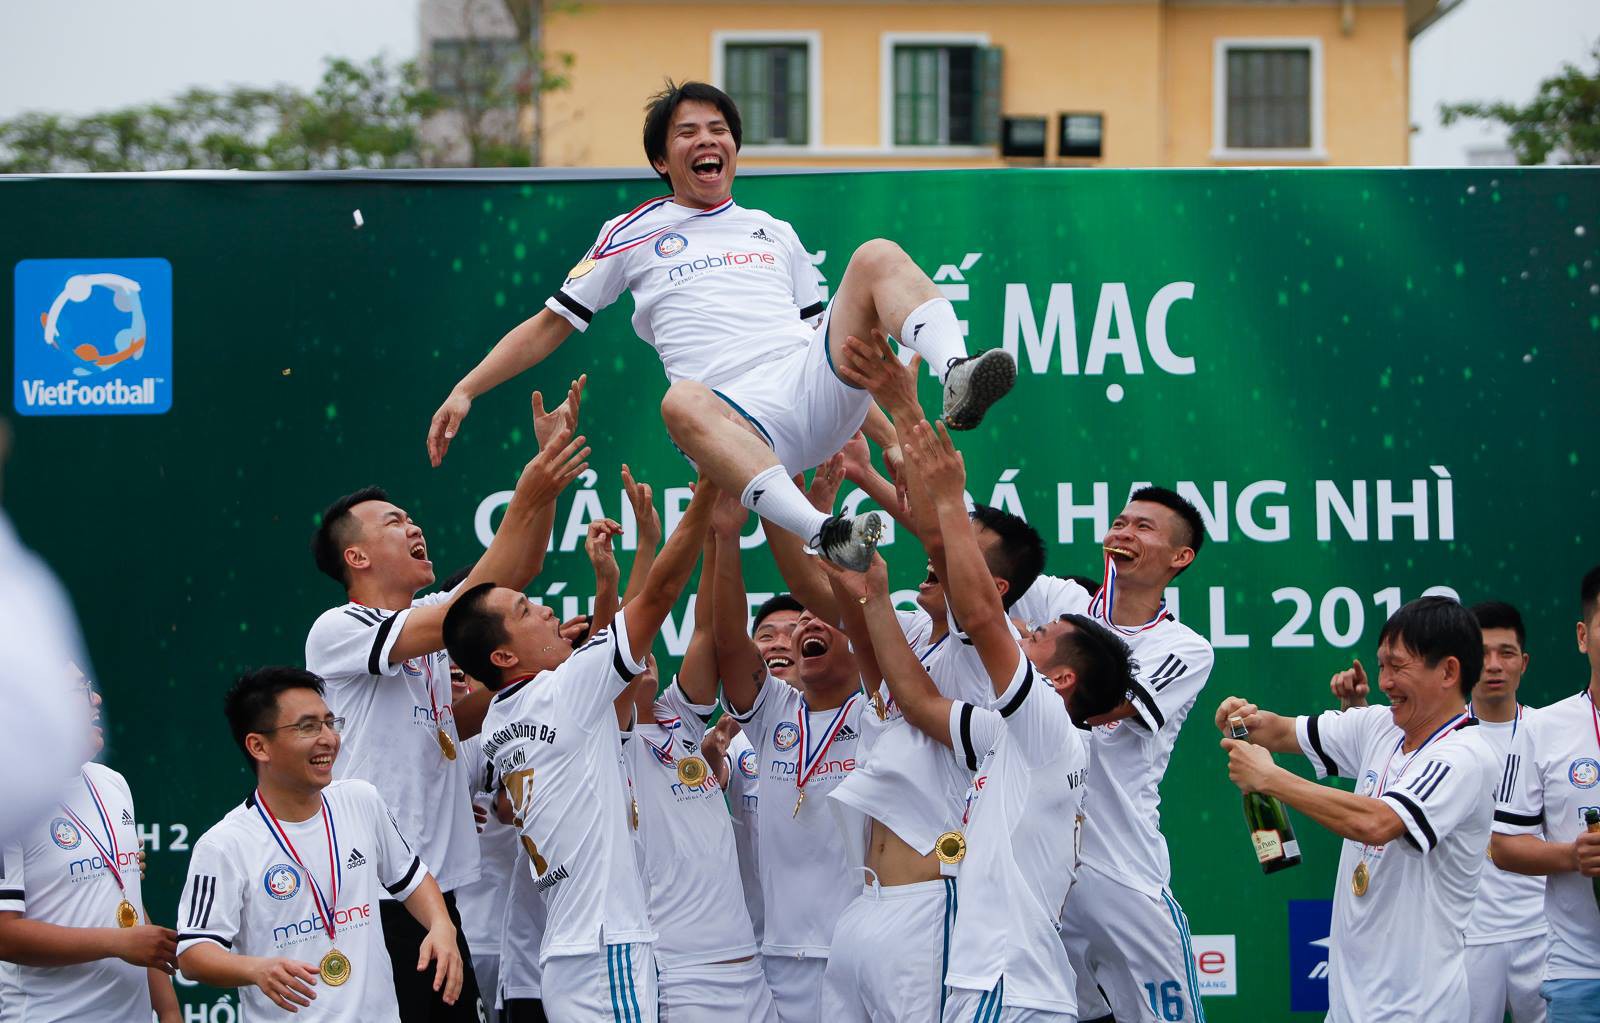 hình ảnh: Các cầu thủ Mobifone ăn mừng chức vô địch hạng Nhì - Cúp Vietfootball 2018.